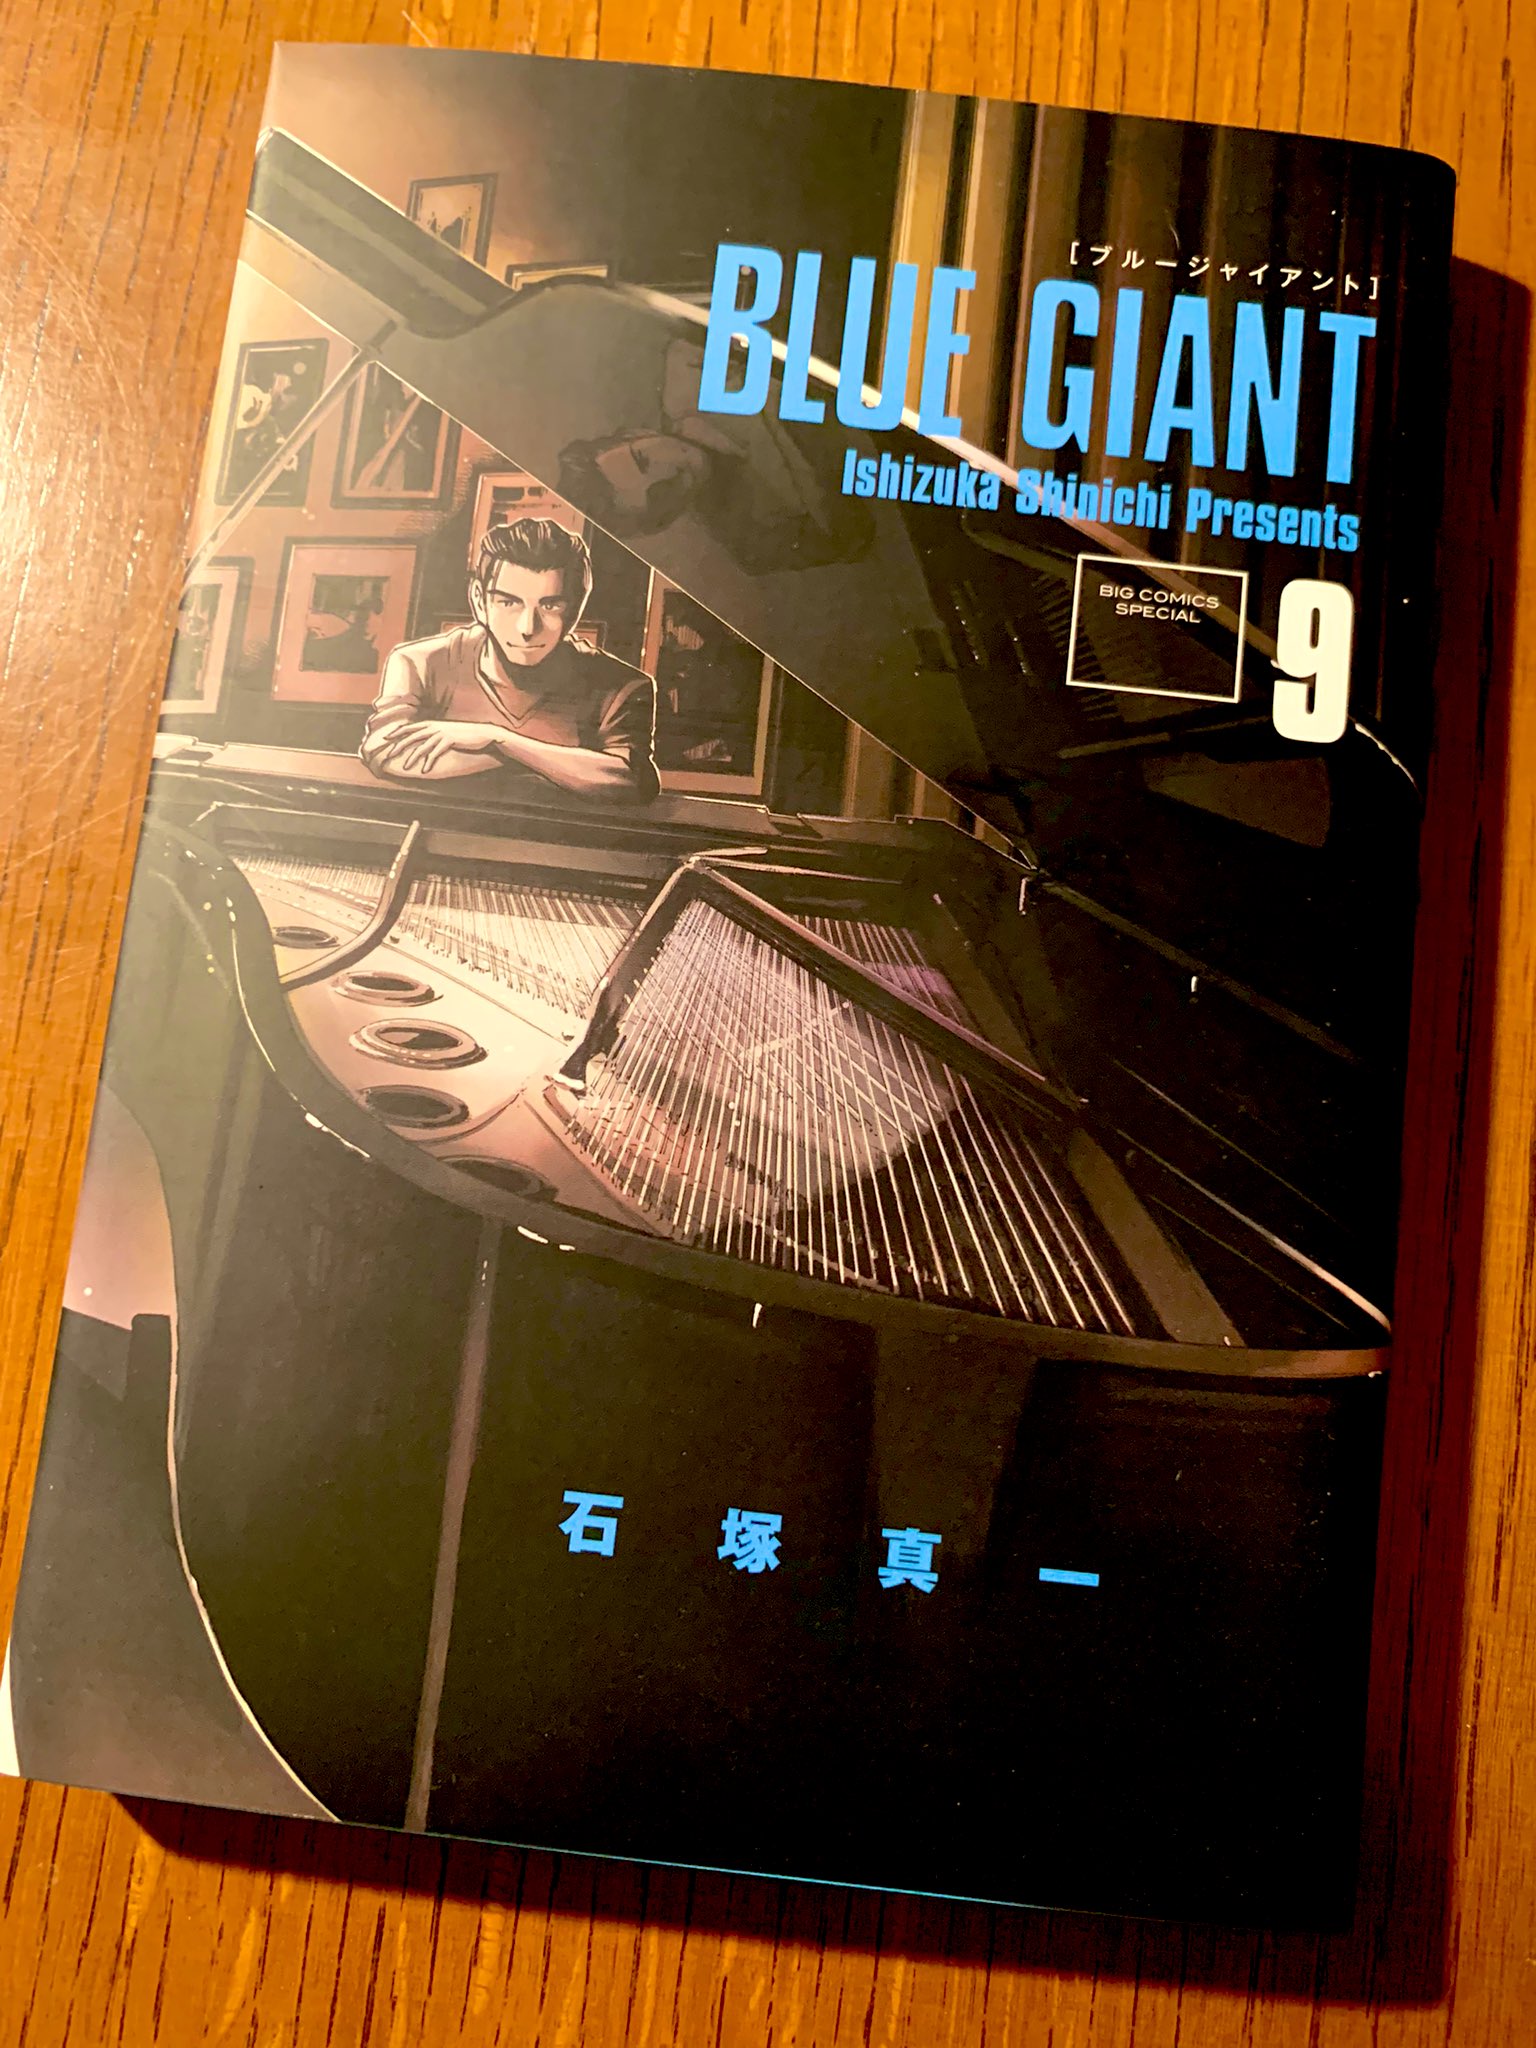 ジャズ喫茶のジャズ 公式 Jazz Kissa 制作スタッフが選ぶ 私が泣いたブルージャイアント Vol 1 Blue Giant 9巻 第69話 Blues In A Life 私ね ピアノ続けてたんだ ジャズってますね ブルージャイアント勝手に応援